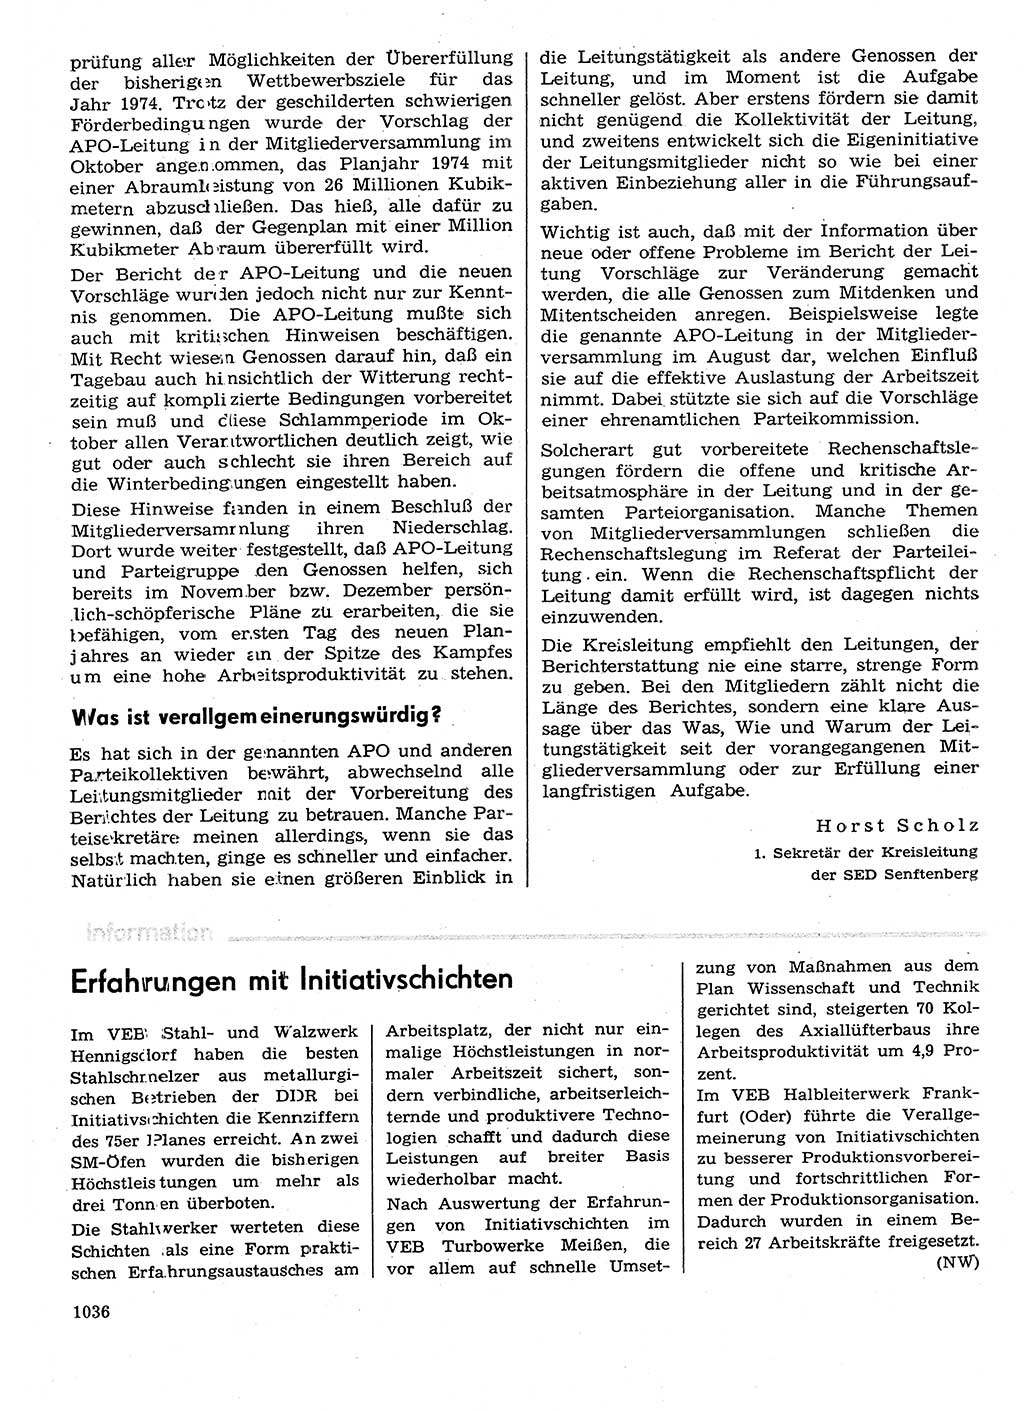 Neuer Weg (NW), Organ des Zentralkomitees (ZK) der SED (Sozialistische Einheitspartei Deutschlands) für Fragen des Parteilebens, 29. Jahrgang [Deutsche Demokratische Republik (DDR)] 1974, Seite 1036 (NW ZK SED DDR 1974, S. 1036)